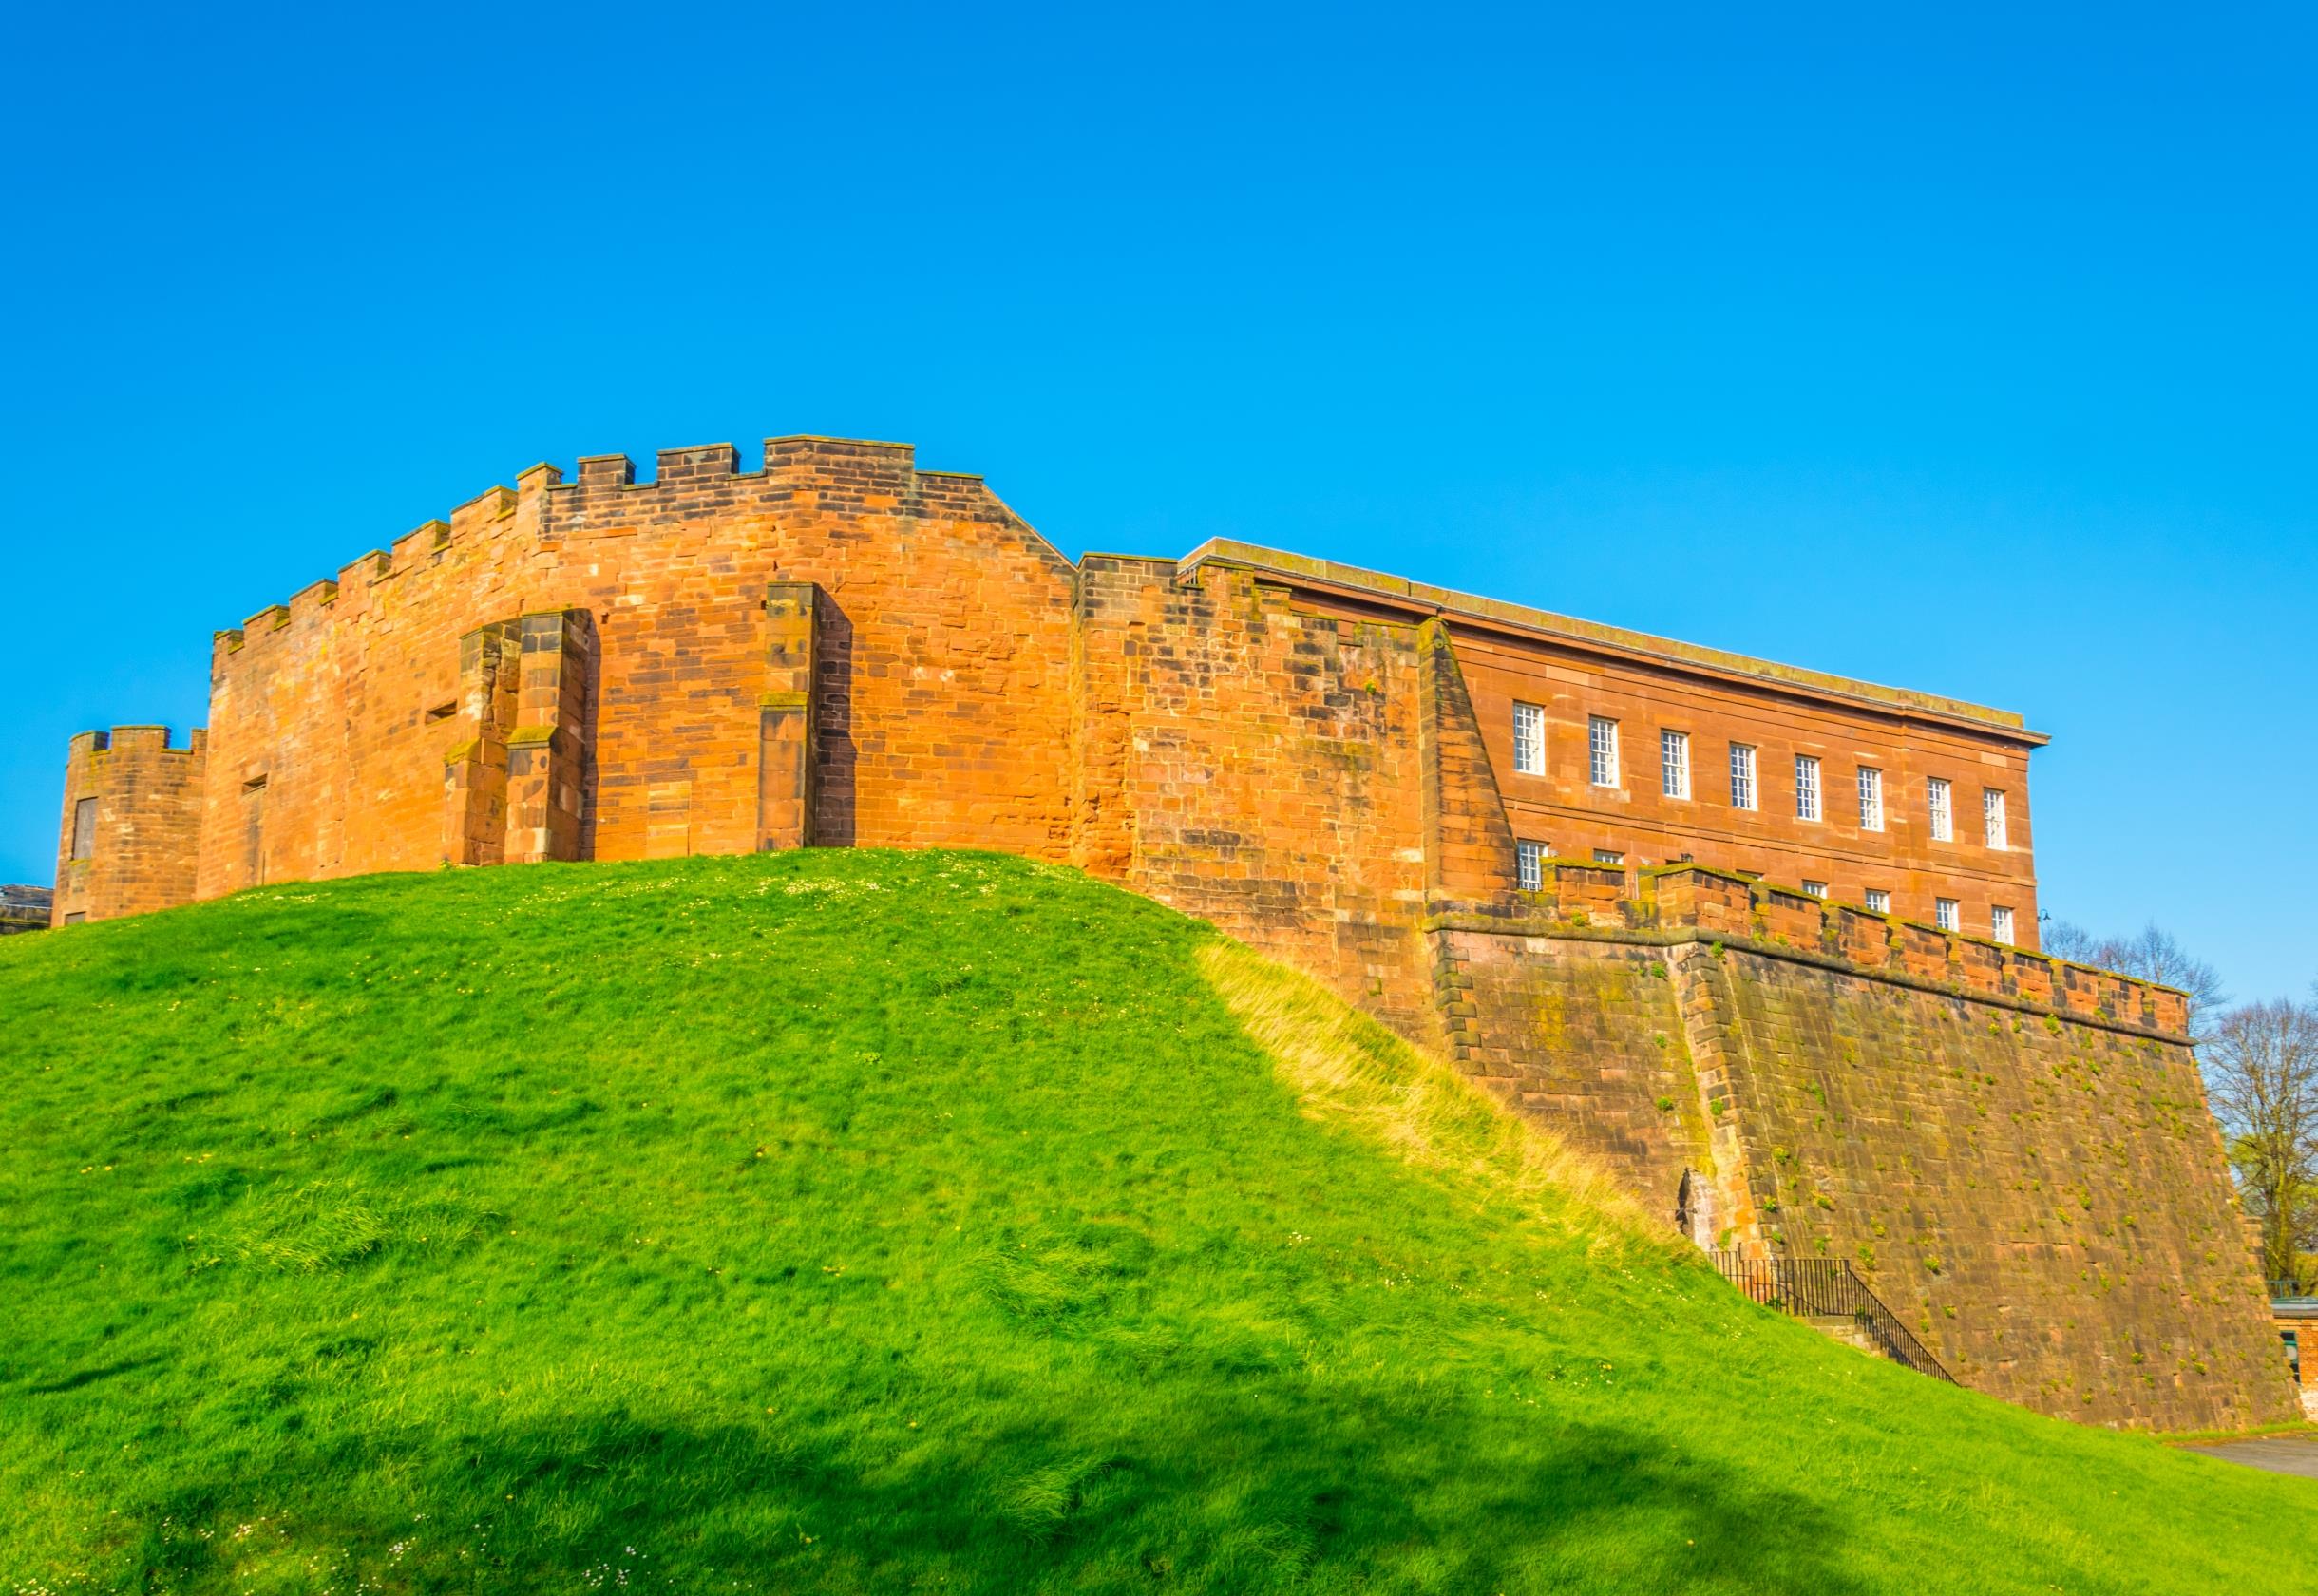 체스터 성과 성벽  Chester castle